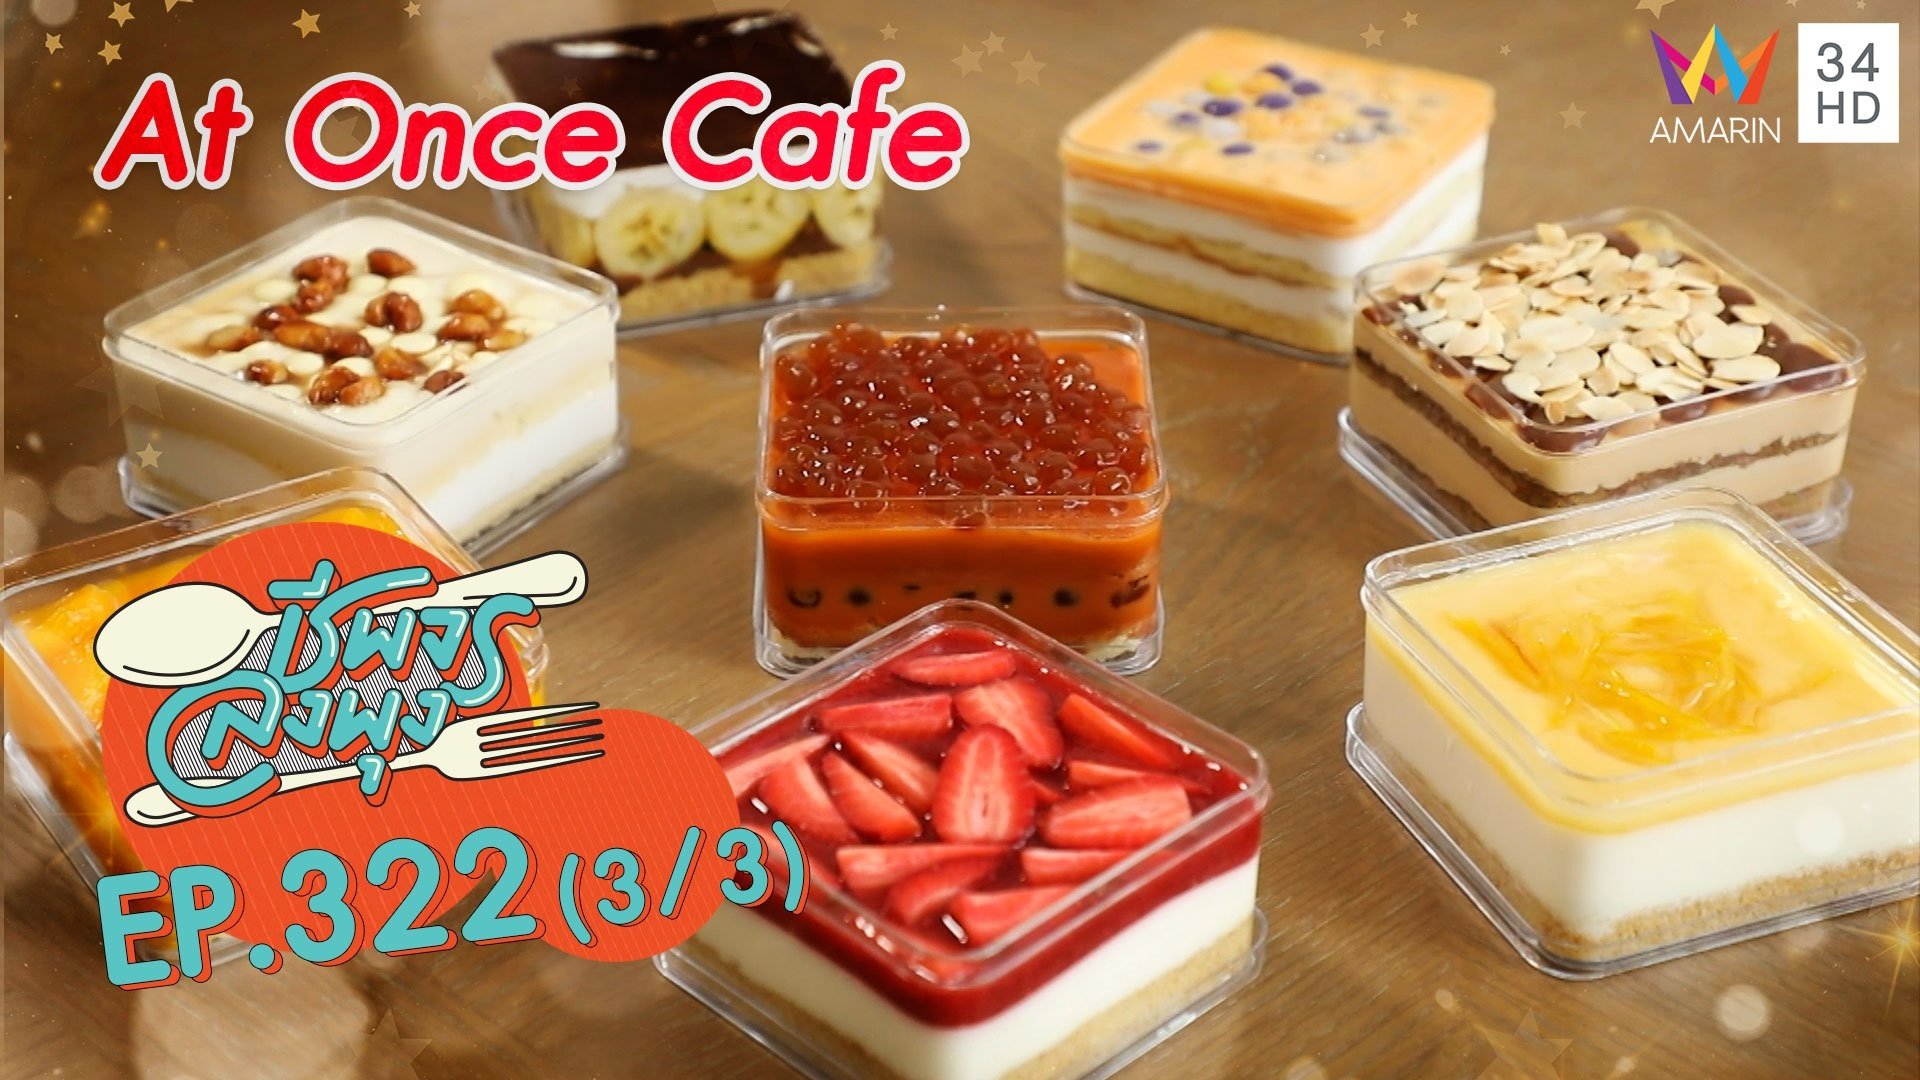 สุดฟิน! เค้กสวยอร่อย@ ร้าน At Once Cafe | ชีพจรลงพุง | 5 ก.ย. 64 (3/3) | AMARIN TVHD34